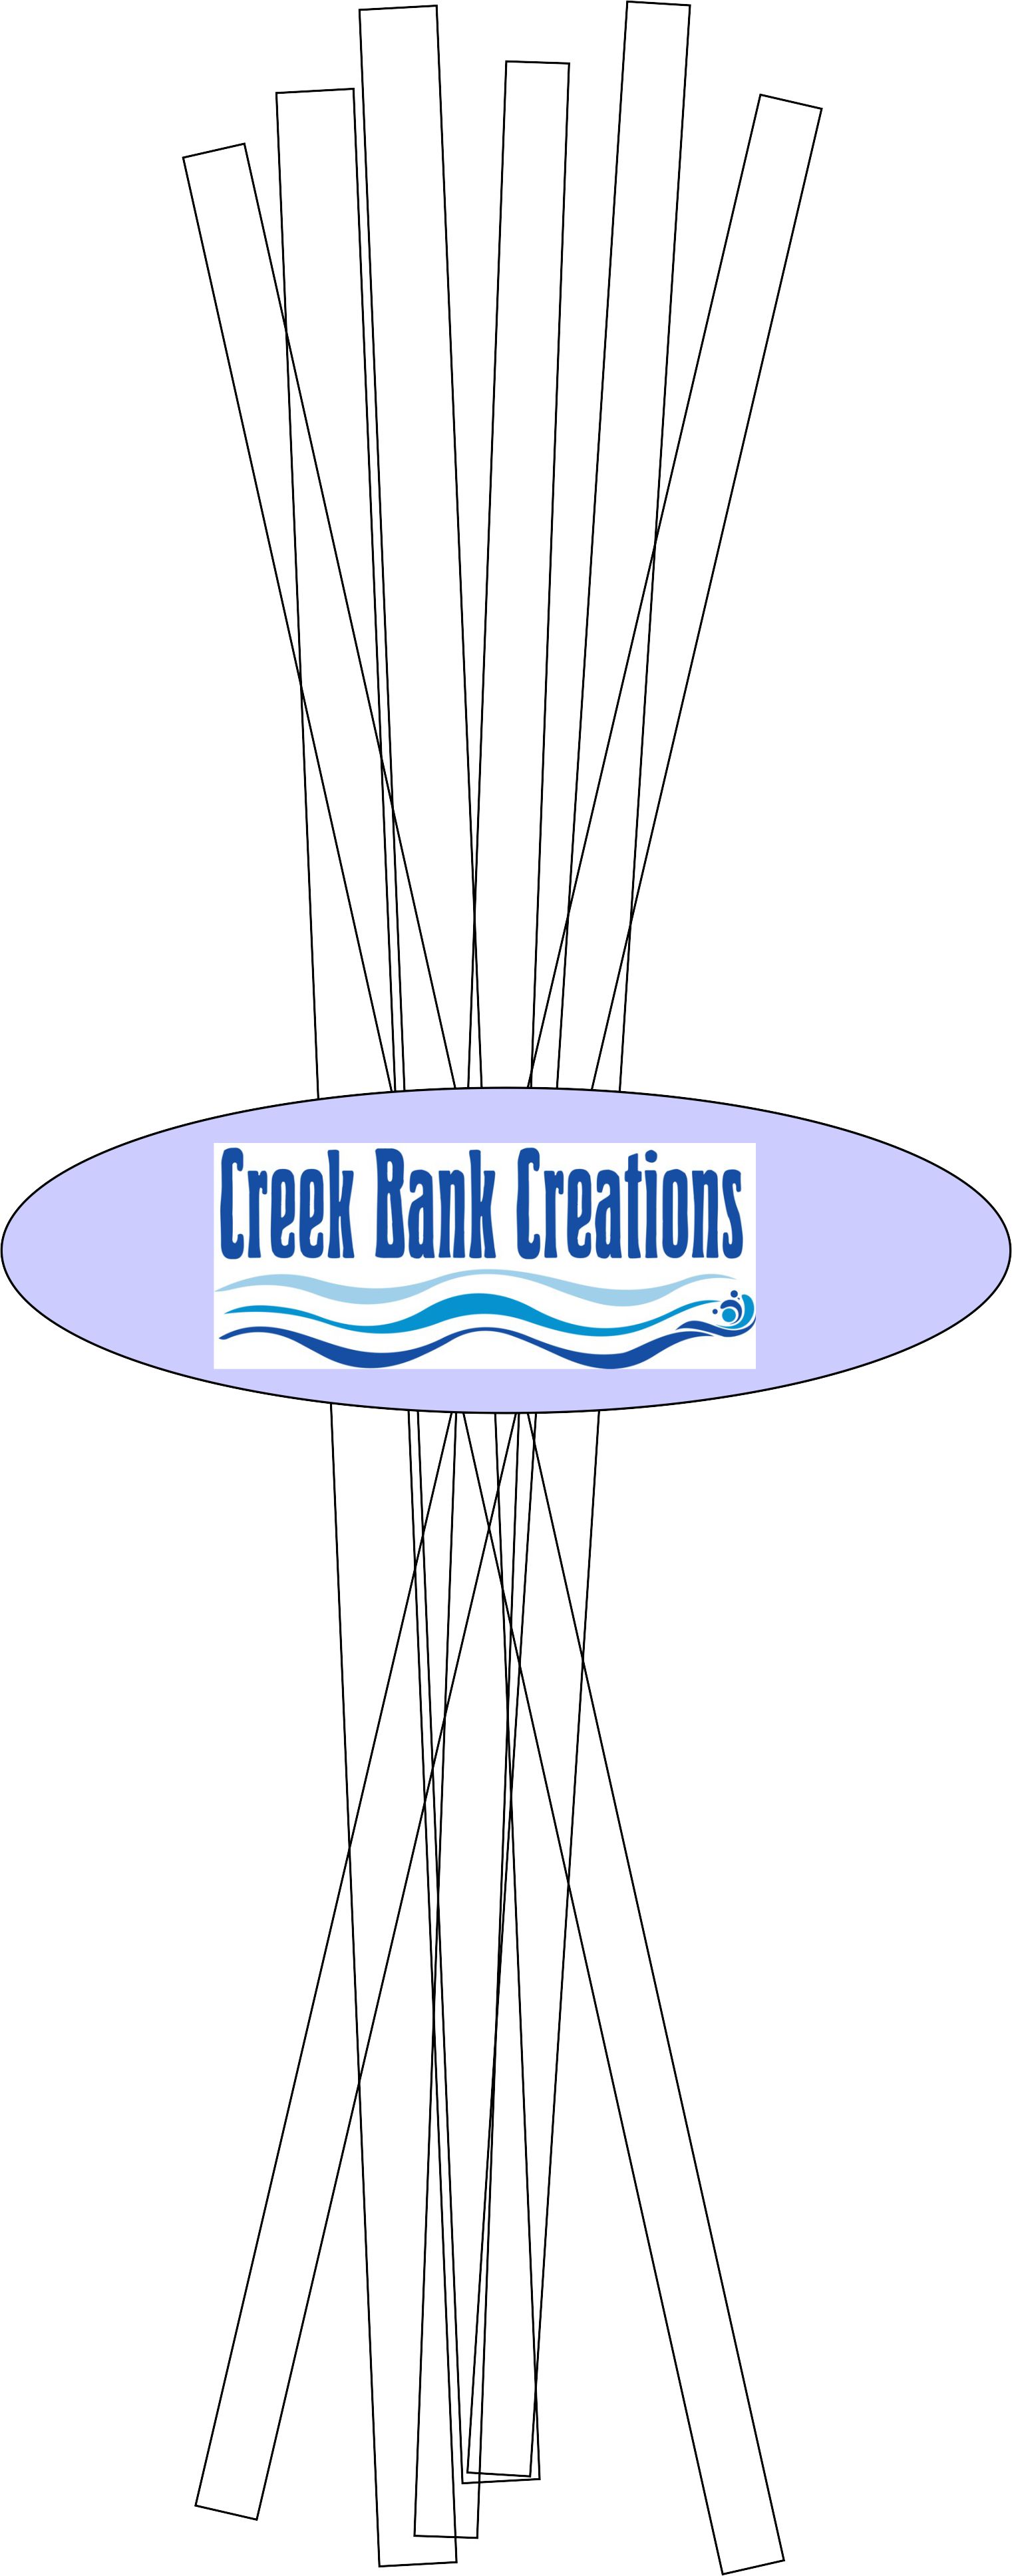 Creek Bank Creations Grid Pad Grid Pad 50 sheets, CBGRID [CBC Grid Paper Pad]  - $12.99 : Creek Bank Creations, Inc. 